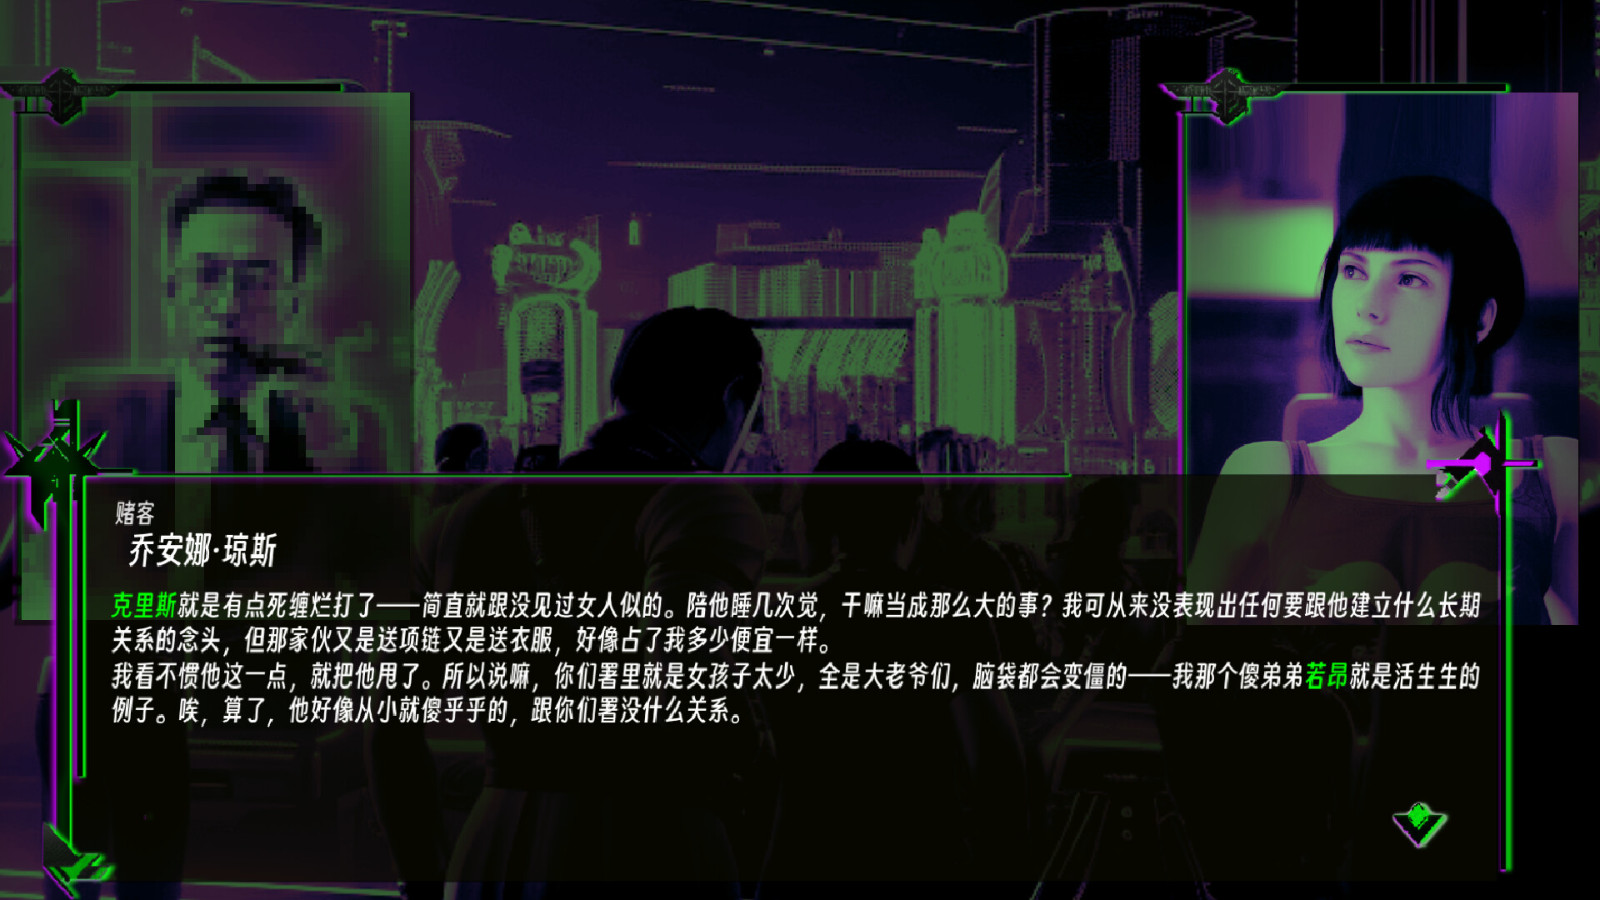 非线性文字冒险游戏《天穹下的格林》Steam页面上线 支持简体中文